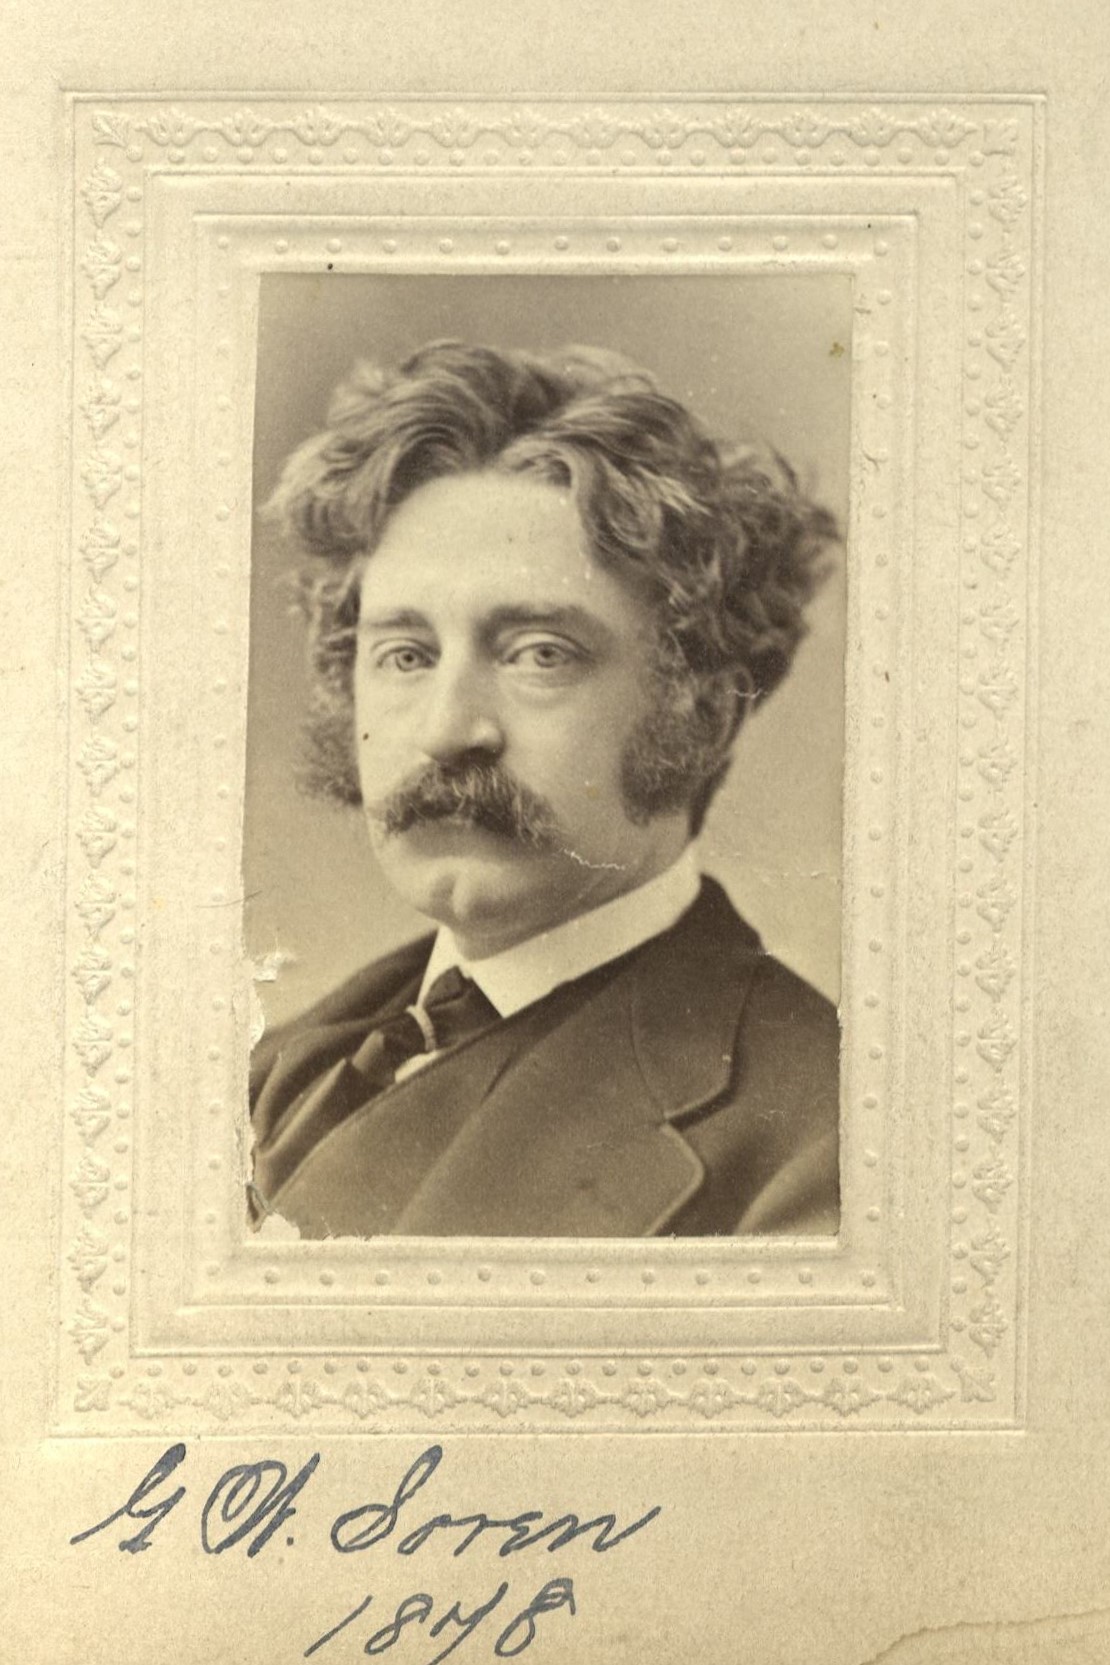 Member portrait of George W. Soren